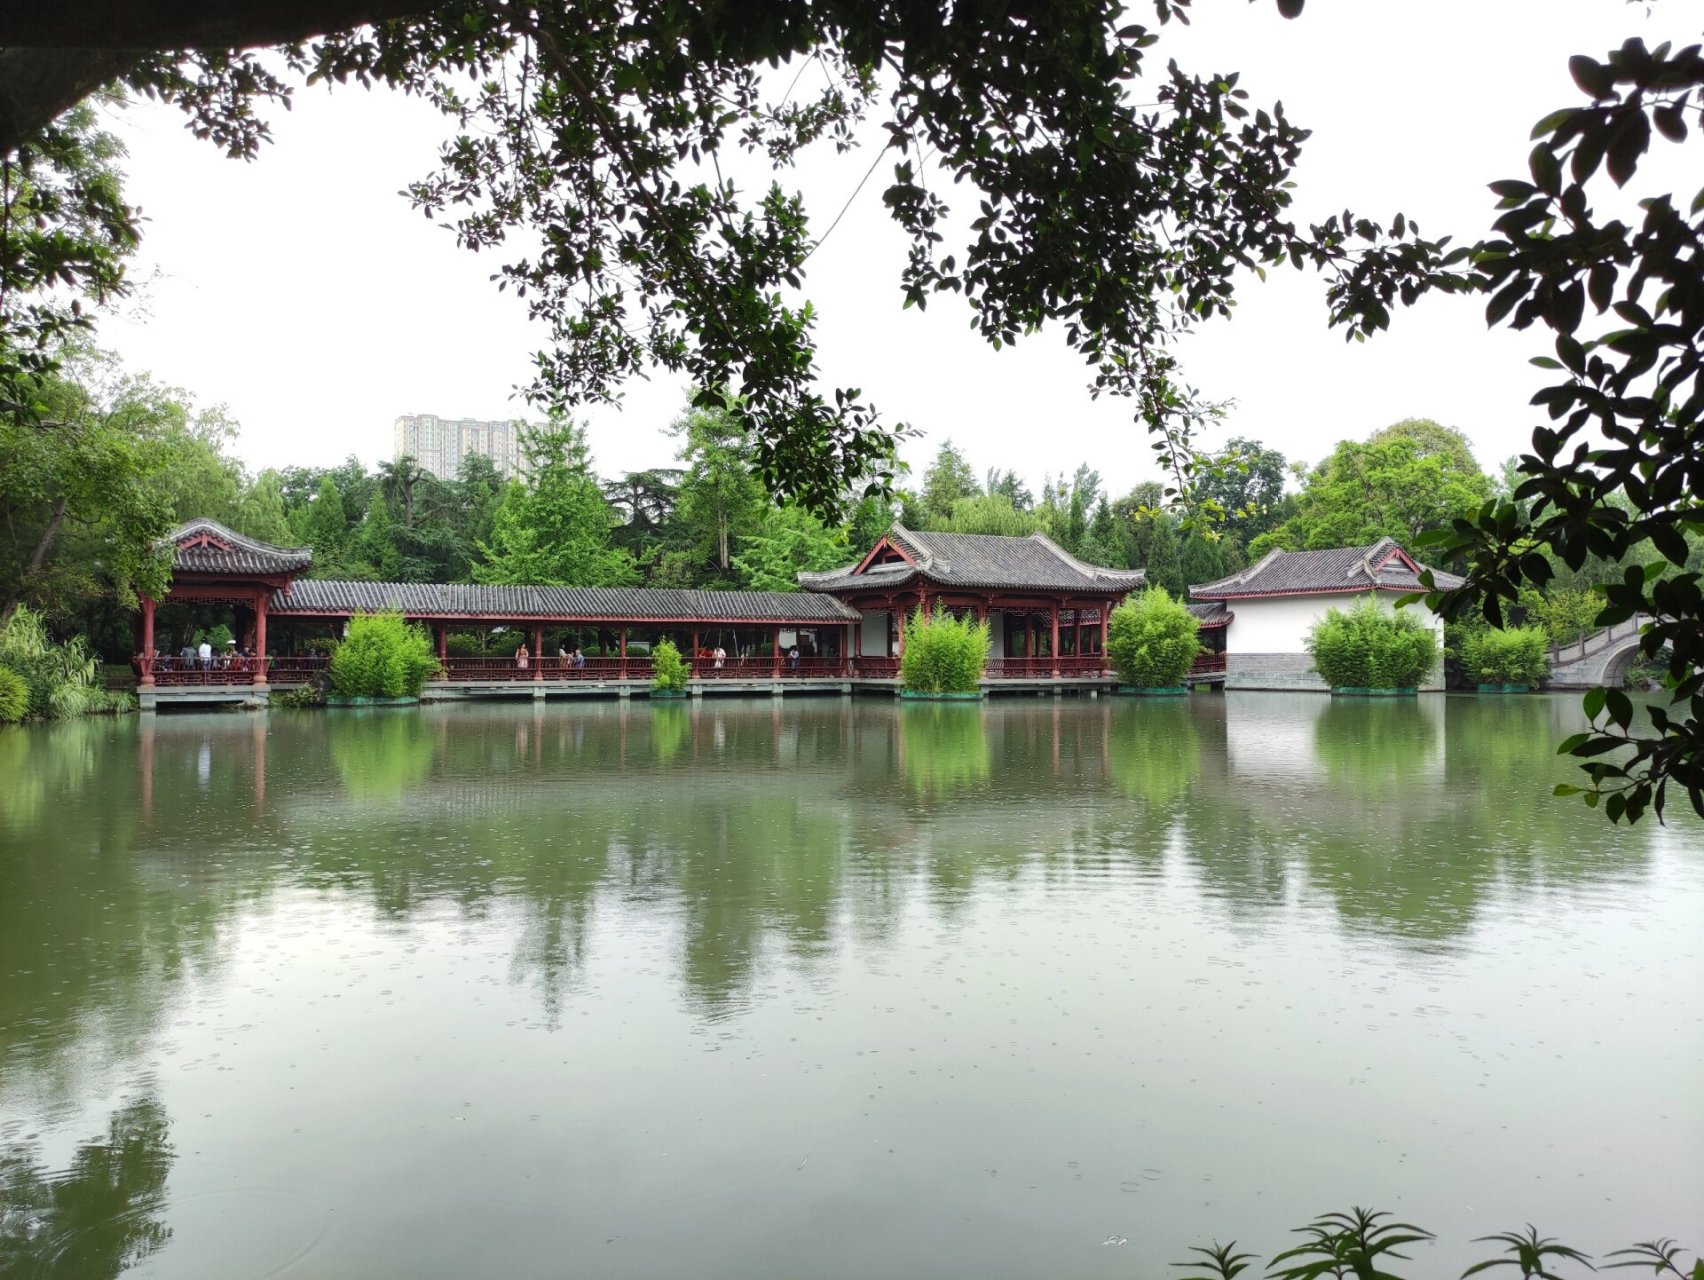 中式园林的艺术魅力94 成都的南郊公园,位于成都市南门外武侯祠旁